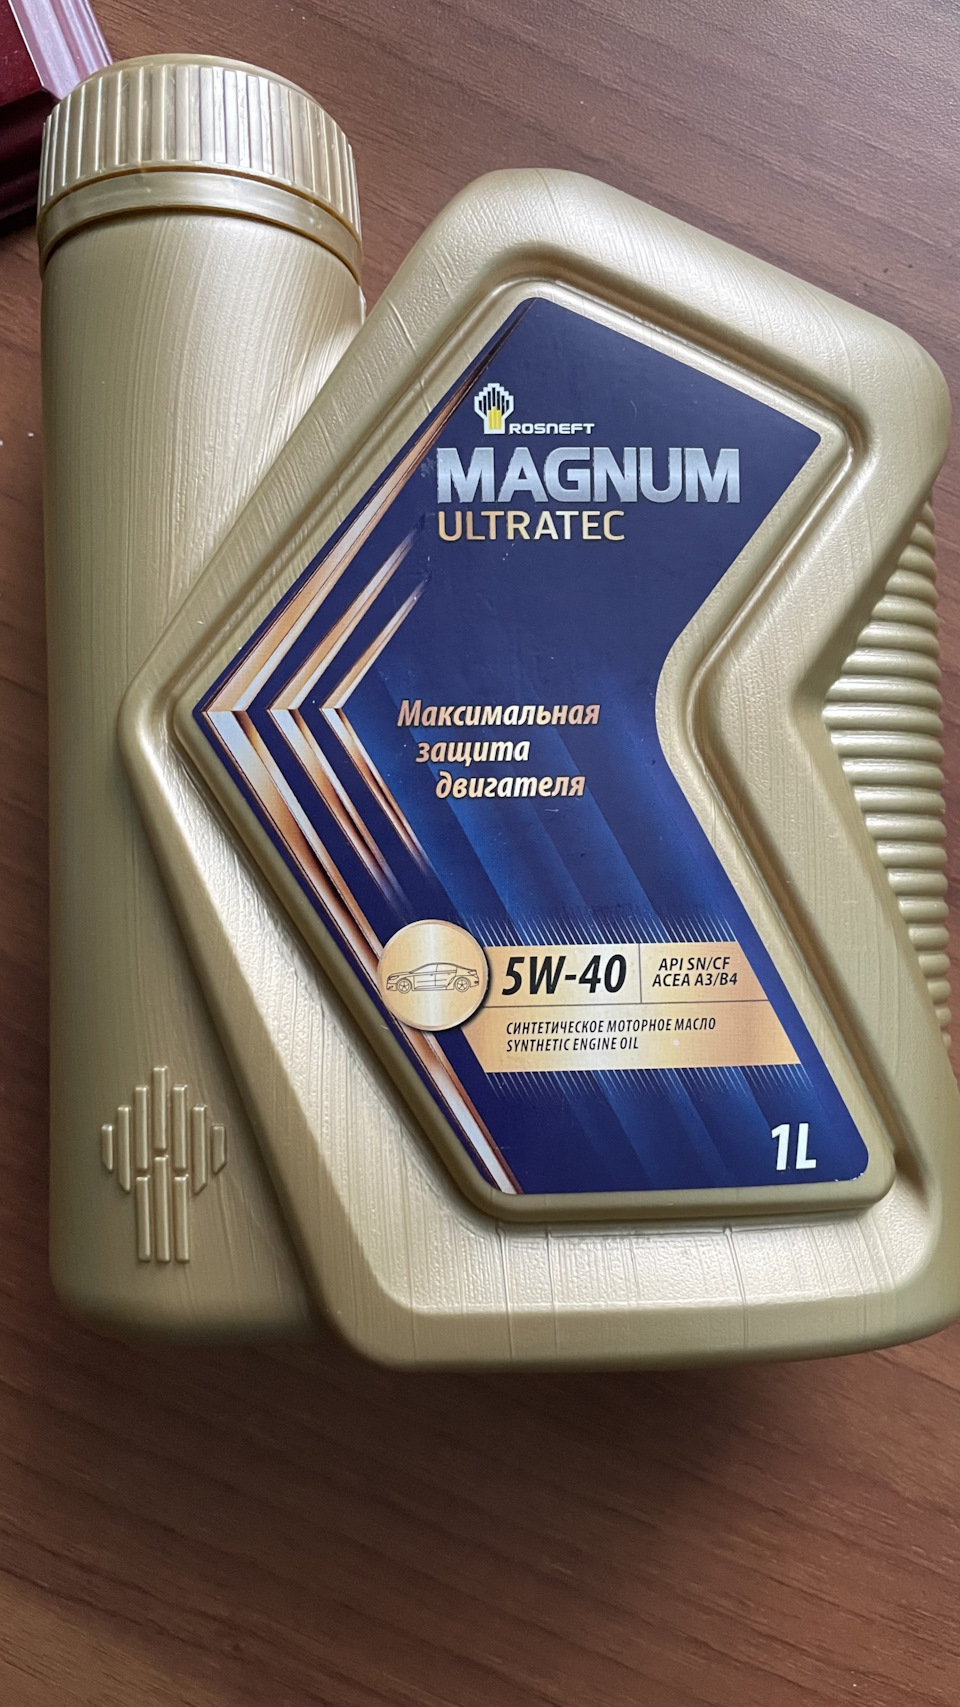 Масло роснефть 5w40 ультратек отзывы. Rosneft Magnum Ultratec 5w40 реклама. Rosneft Magnum Ultratec. Упаковка моторного масла Magnum Ultratec. Справка от производитель моторного масла Magnum Ultratec.